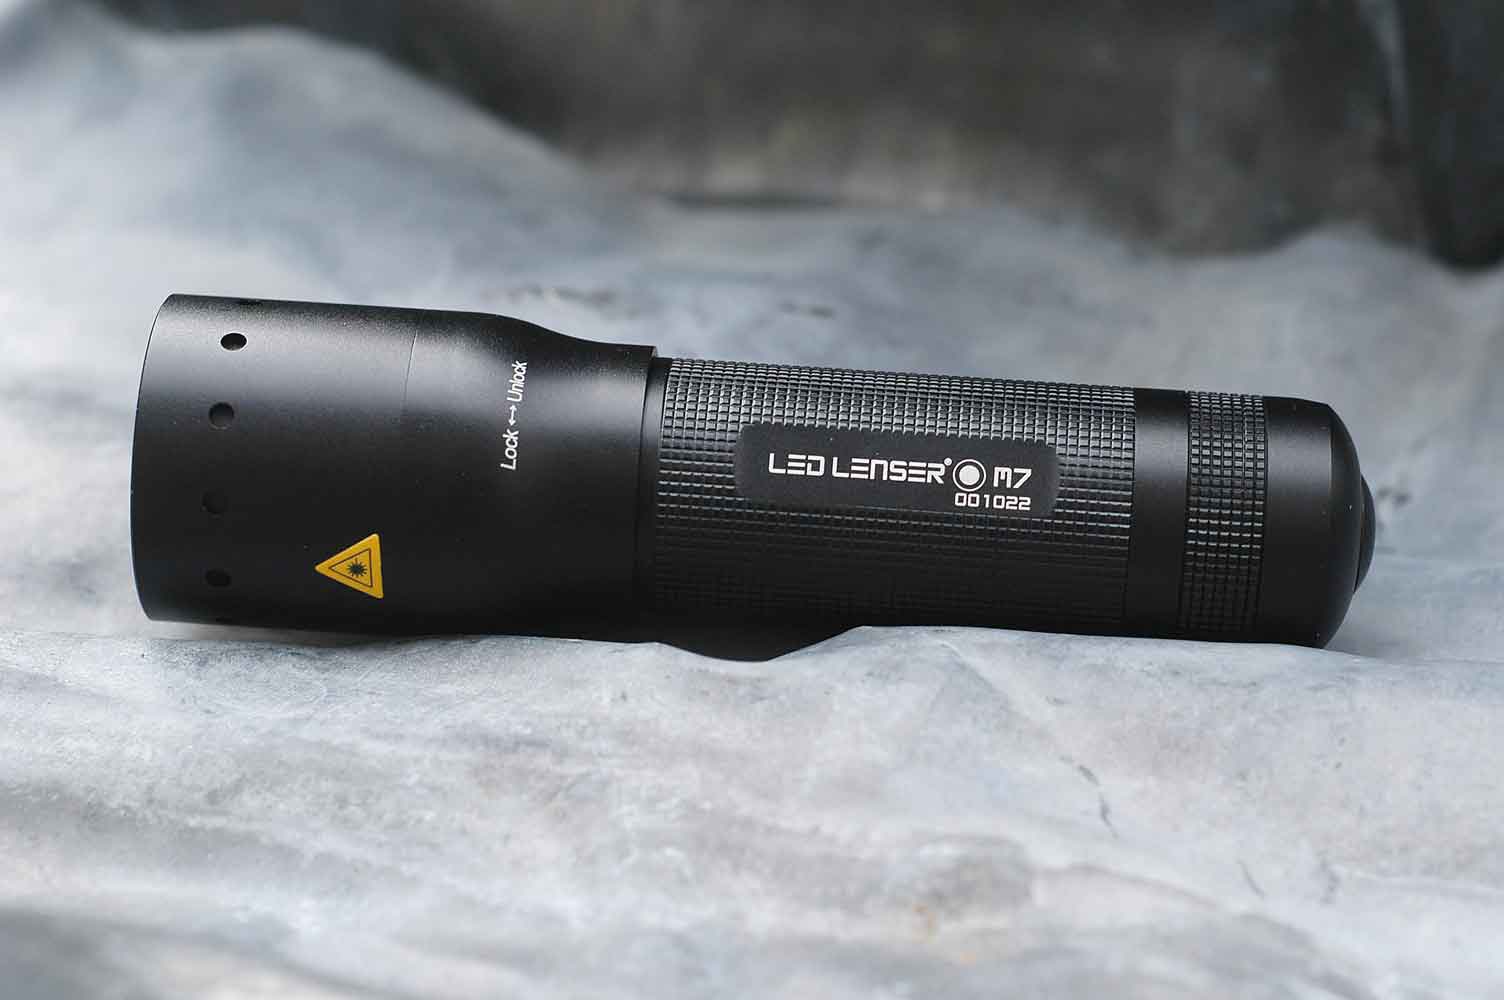 Start using led lenser flashlight and feel the